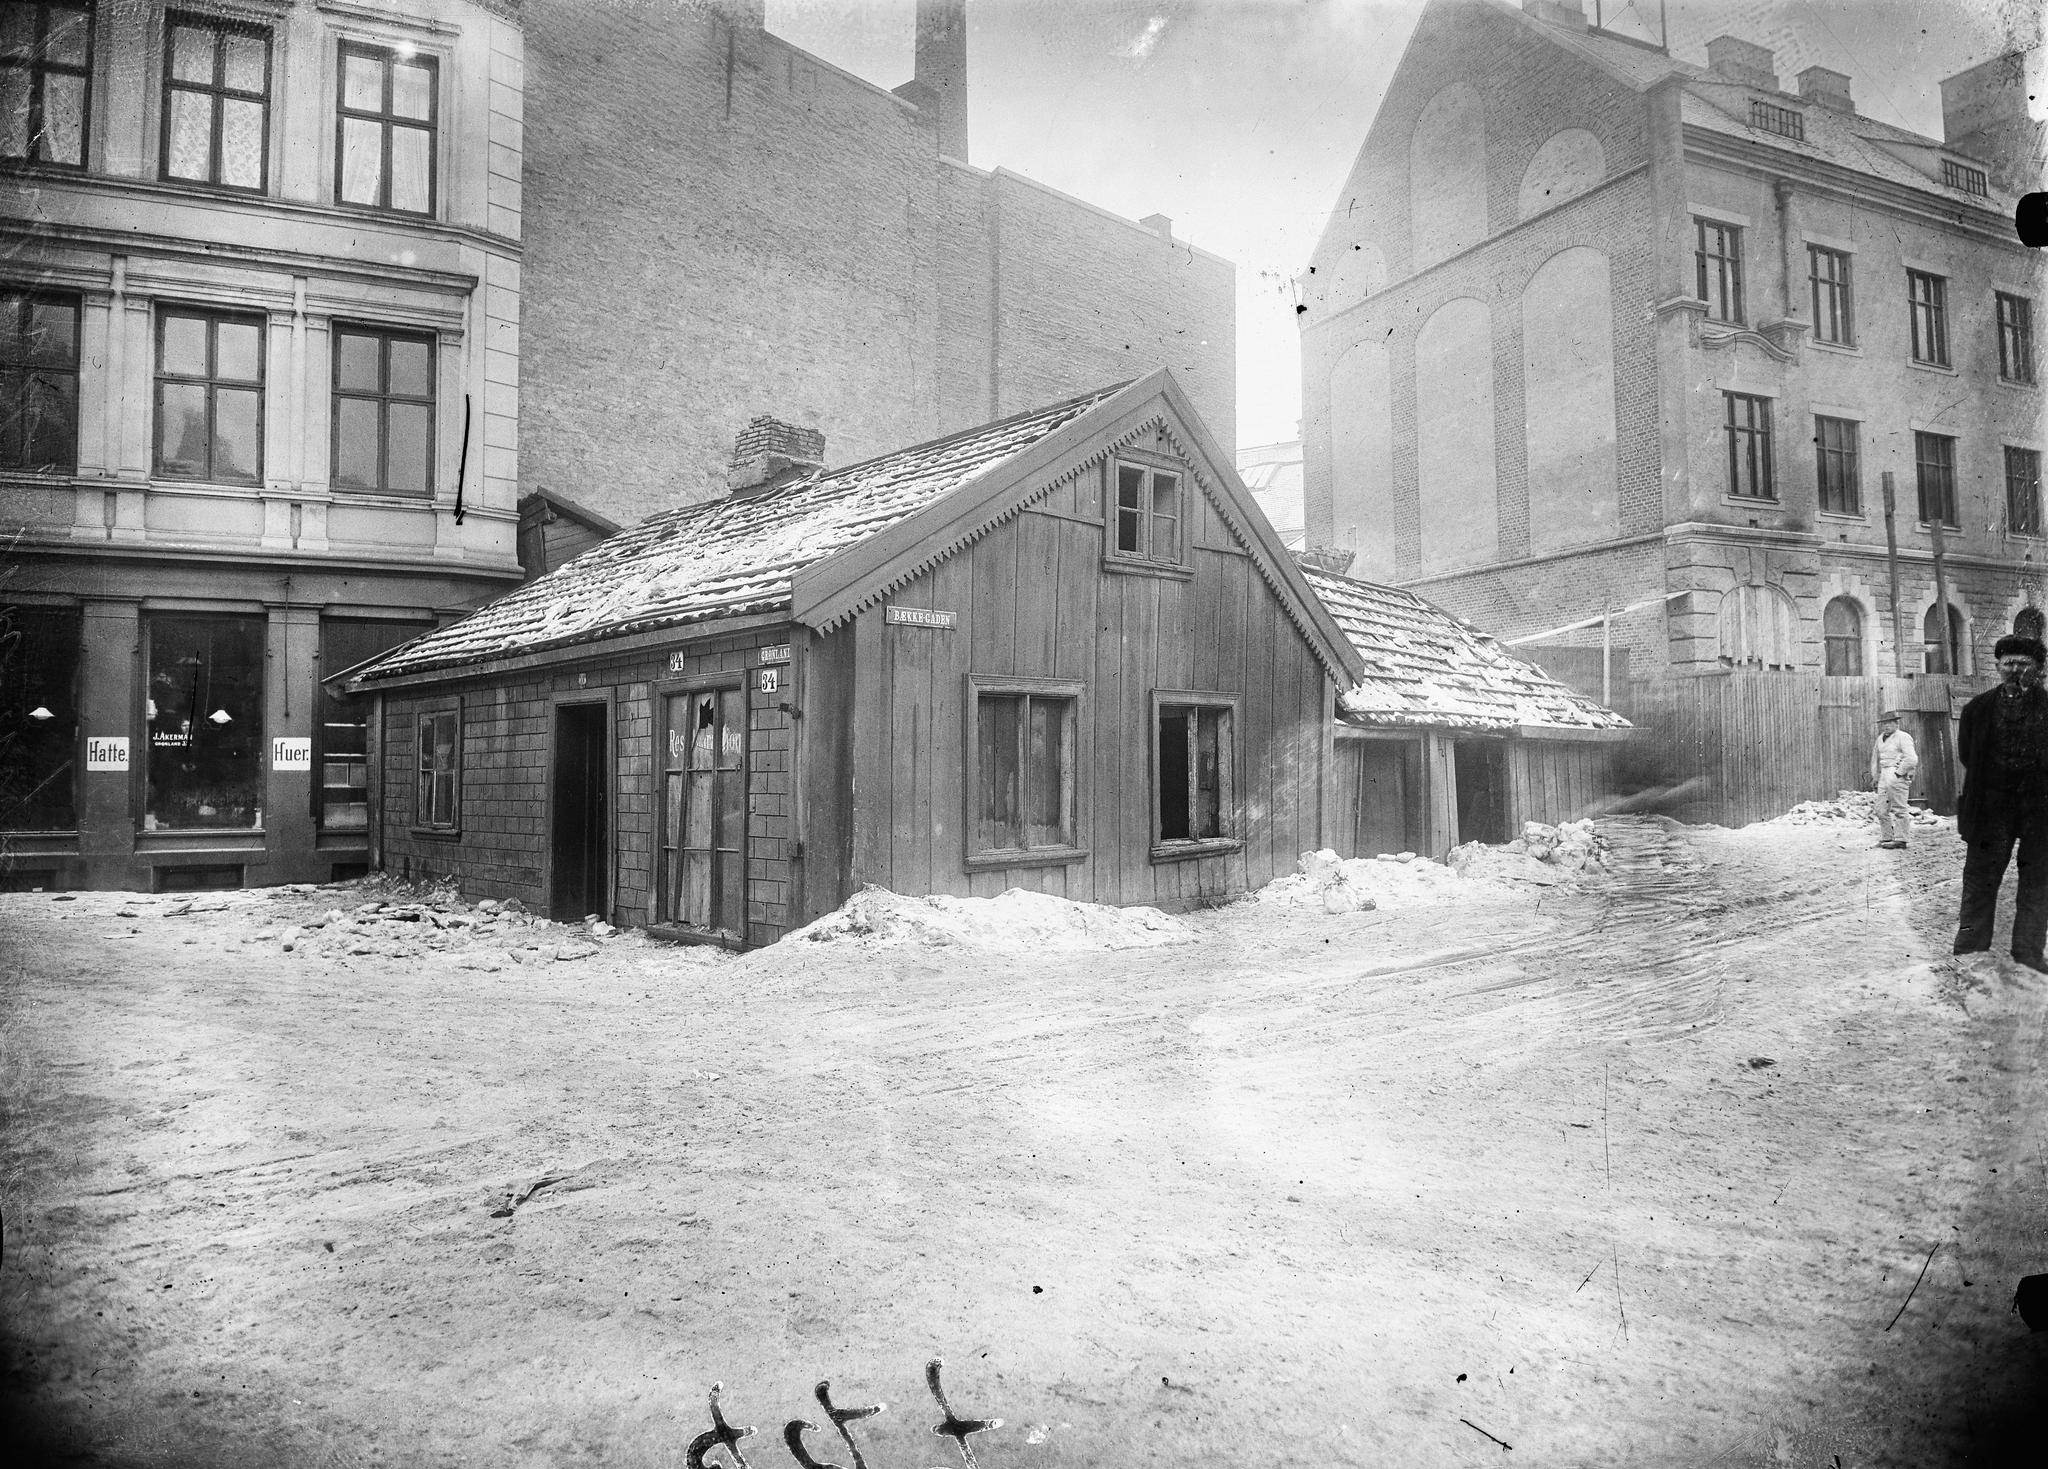 Gammelt trehus med adresse Grønland 34. Til høyre ser vi Grønland politistasjon med adresse Tøyenbekken 5. I dette bygget holder nå Oslo Museum, avdeling Interkulturelt museum til. Her vises utstillingen ”Glimt fra Grønland”. Bildet er fra ca 1890.